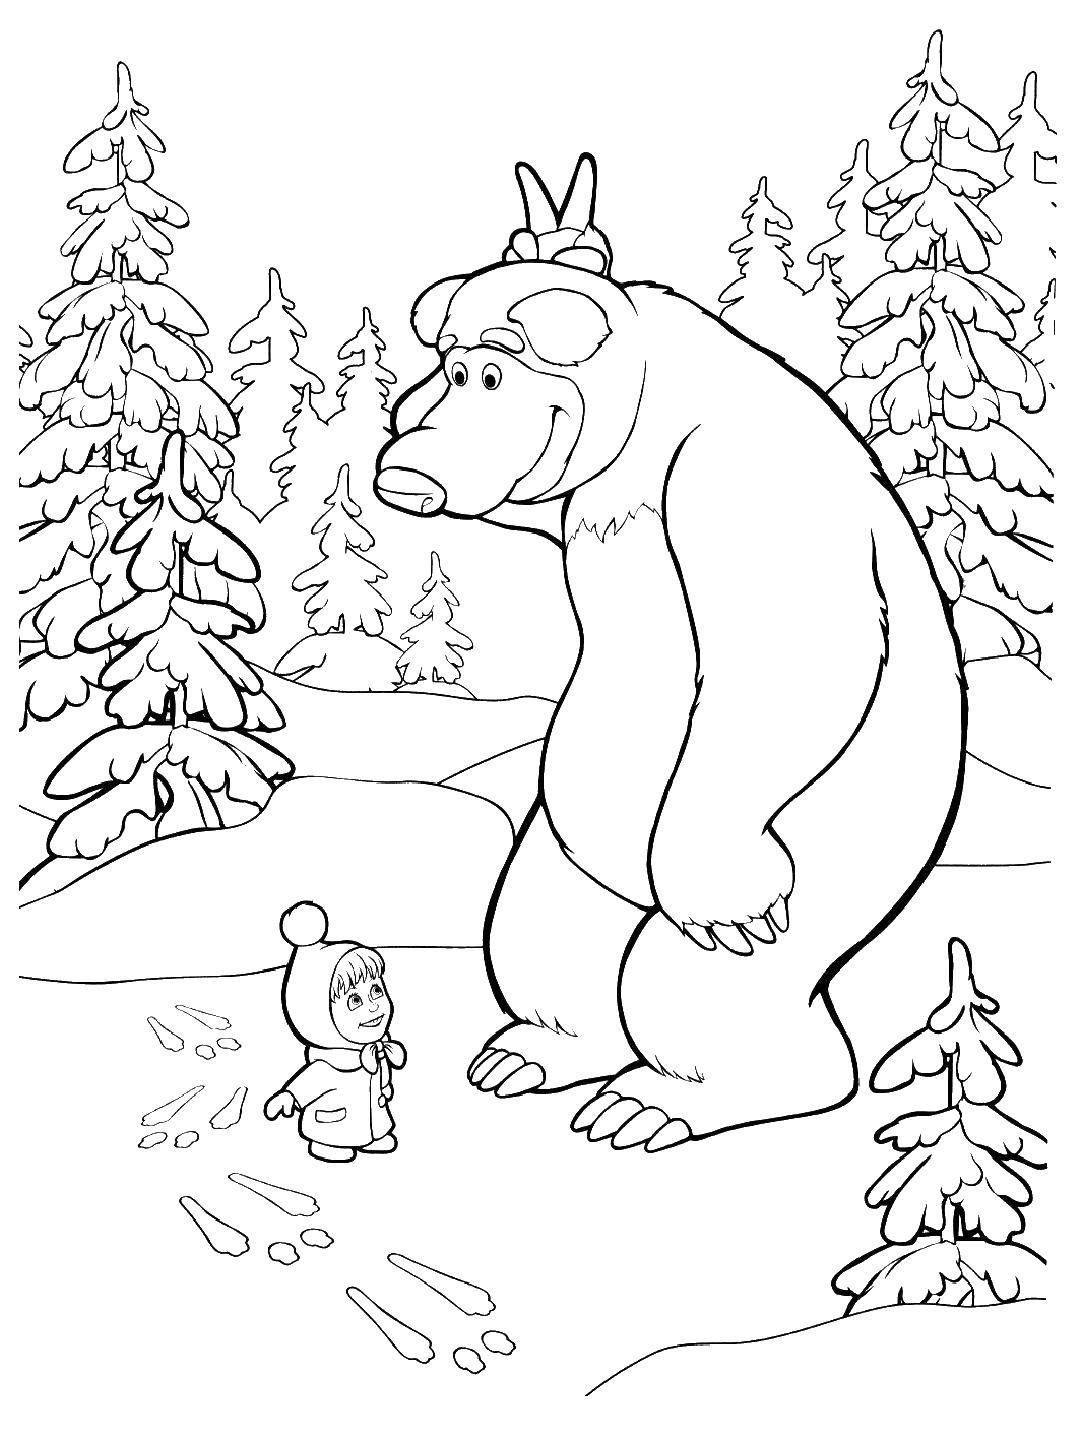 Раскраски для детей про озорную Машу из мультфильма Маша и медведь  Медведь показывает машезайчика